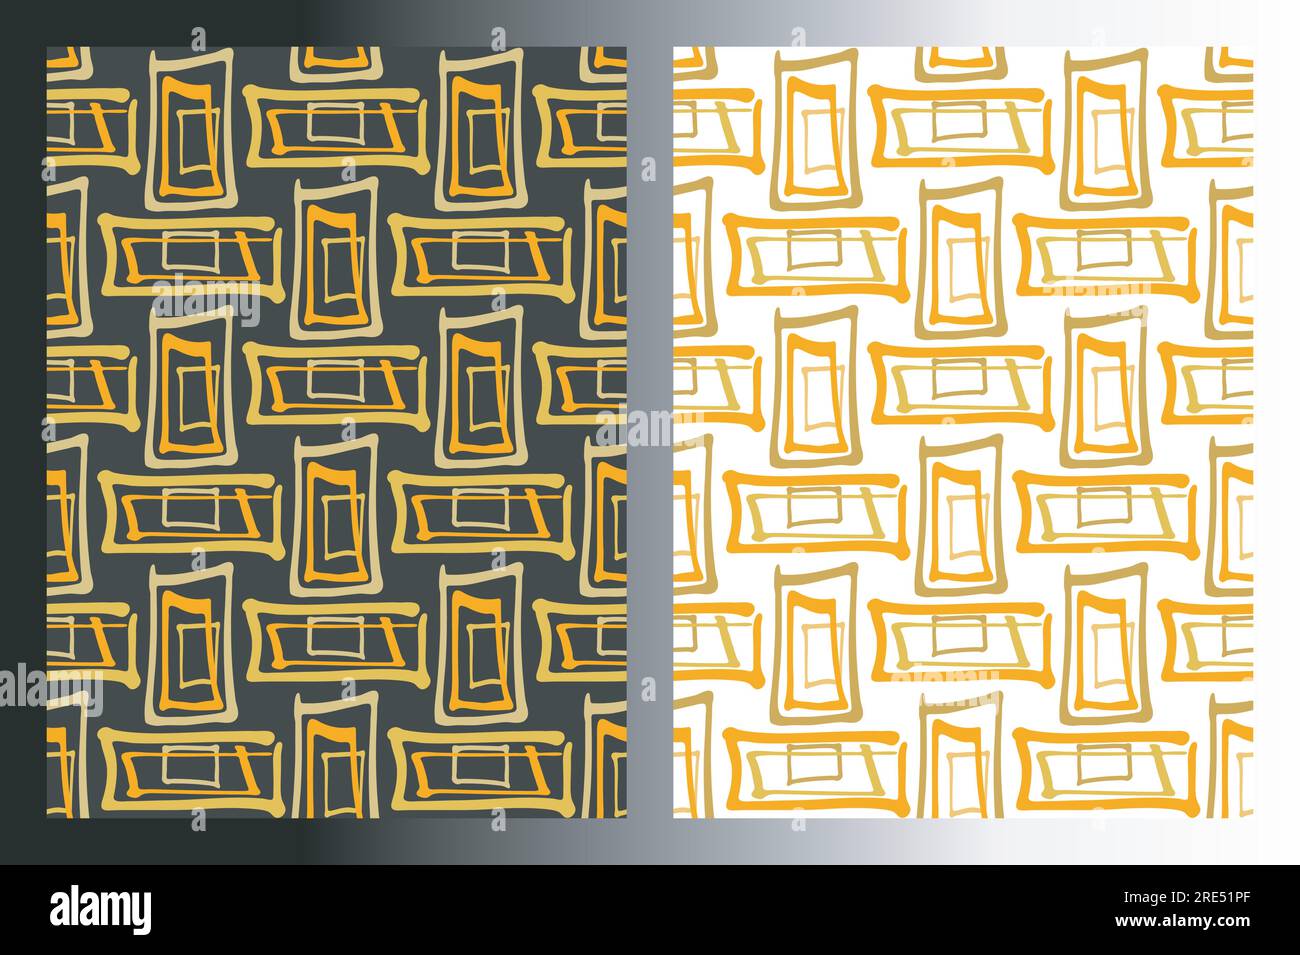 Pattern senza cuciture geometrici a forma di rettangolo, set di 2. Linea di pennelli a inchiostro disegnati a mano, stile cartone animato a doodle, tavolozza di colori giallo oro e arancione. Bianco Illustrazione Vettoriale